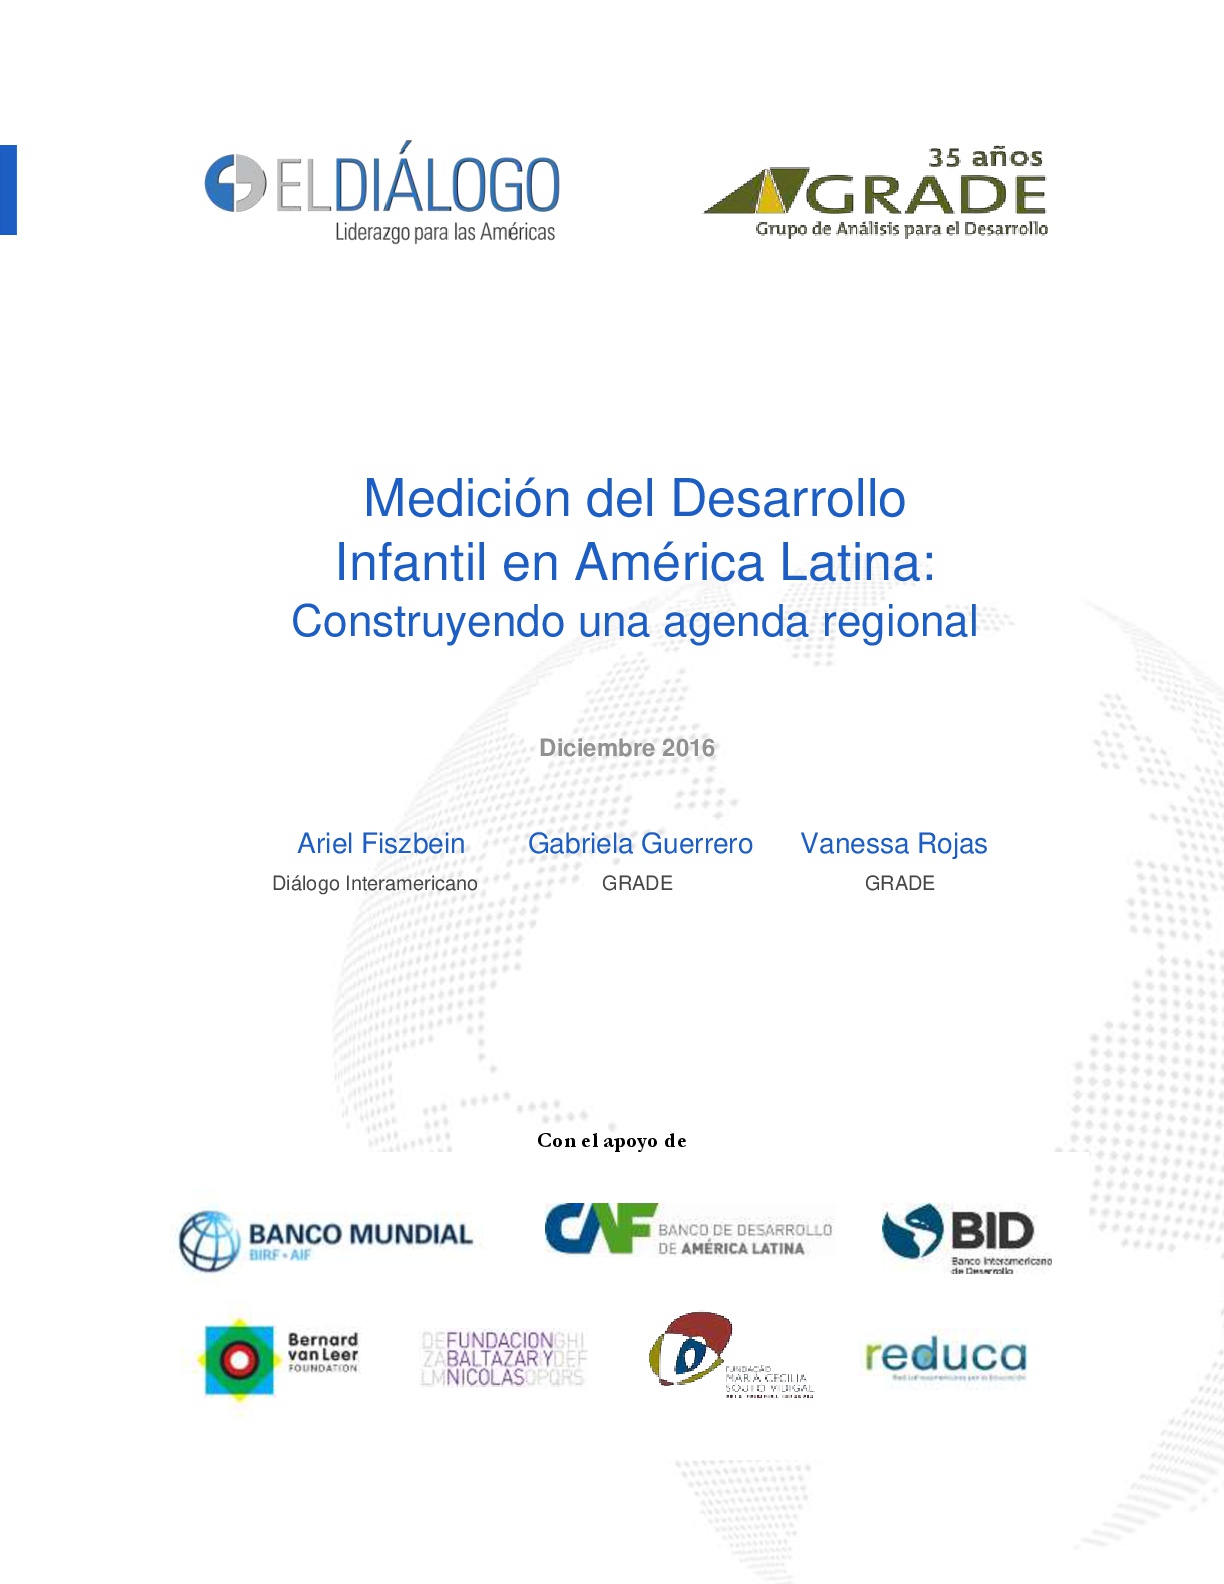 Medición del desarrollo infantil en América Latina: Construyendo una agenda regional